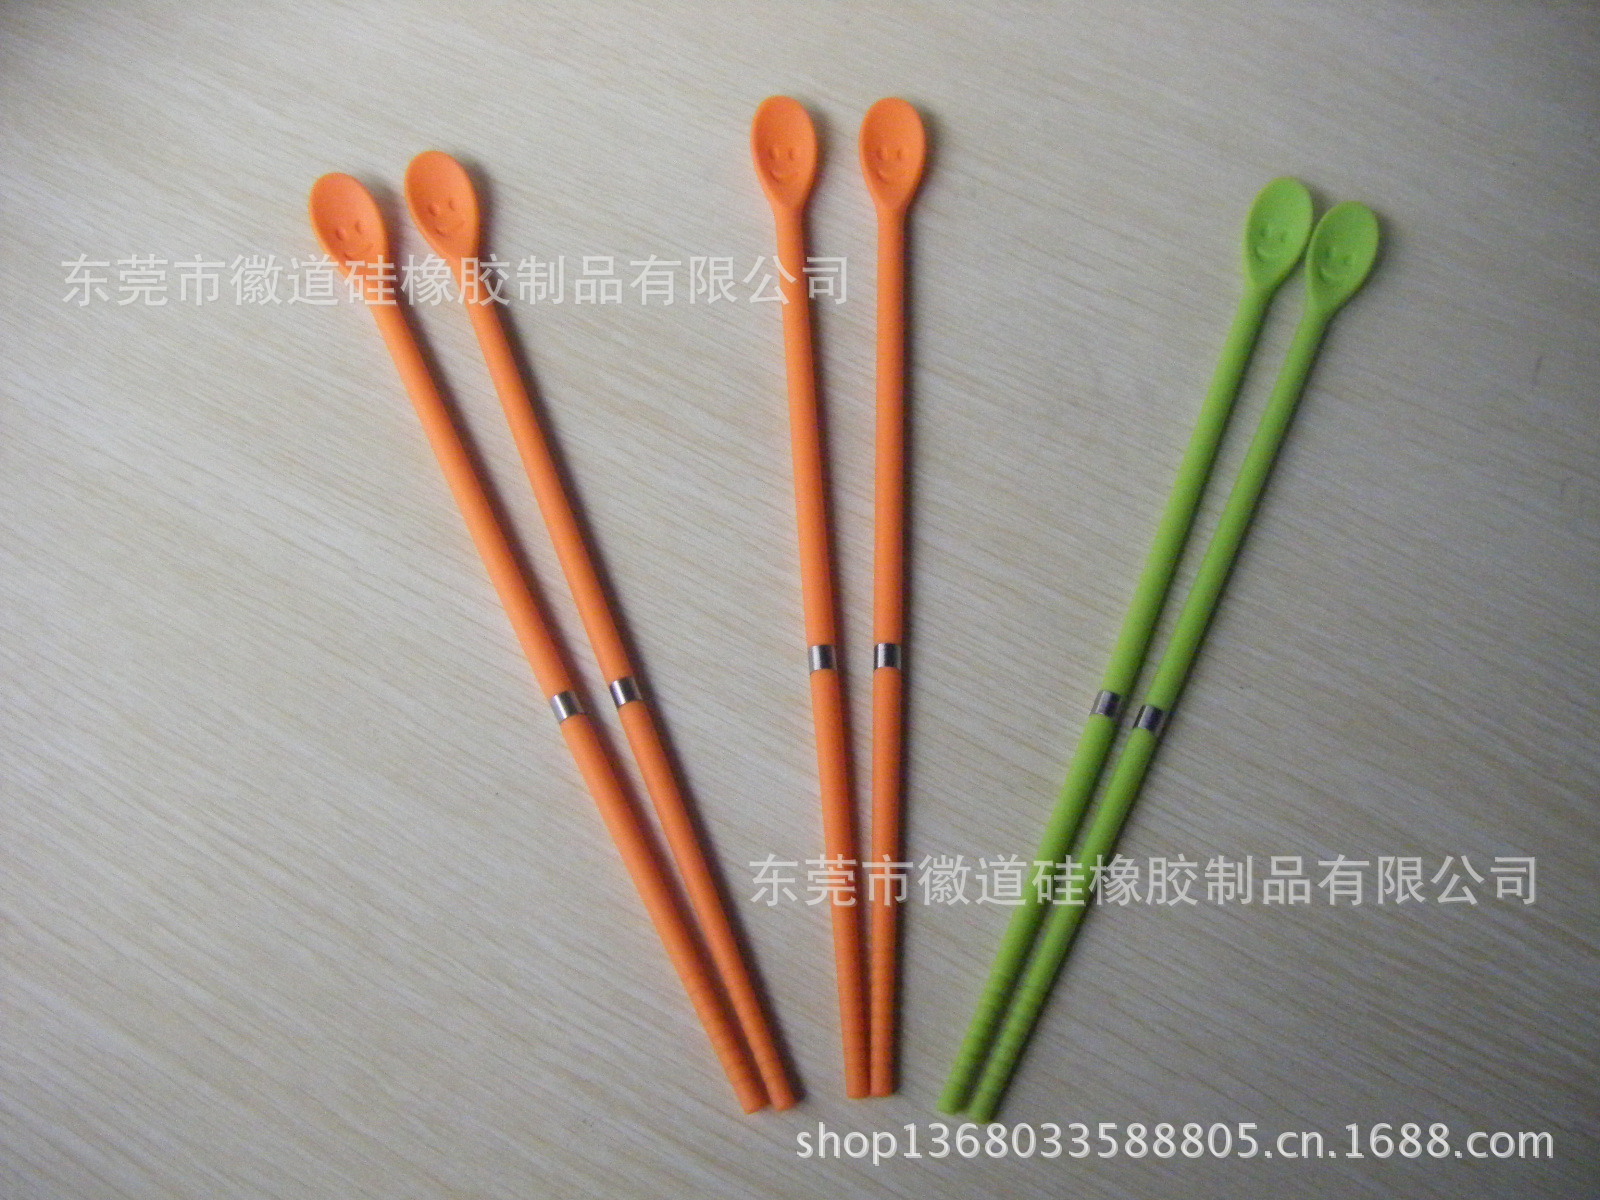 【供应硅胶筷子头 3岁儿童学习硅胶筷子 100%